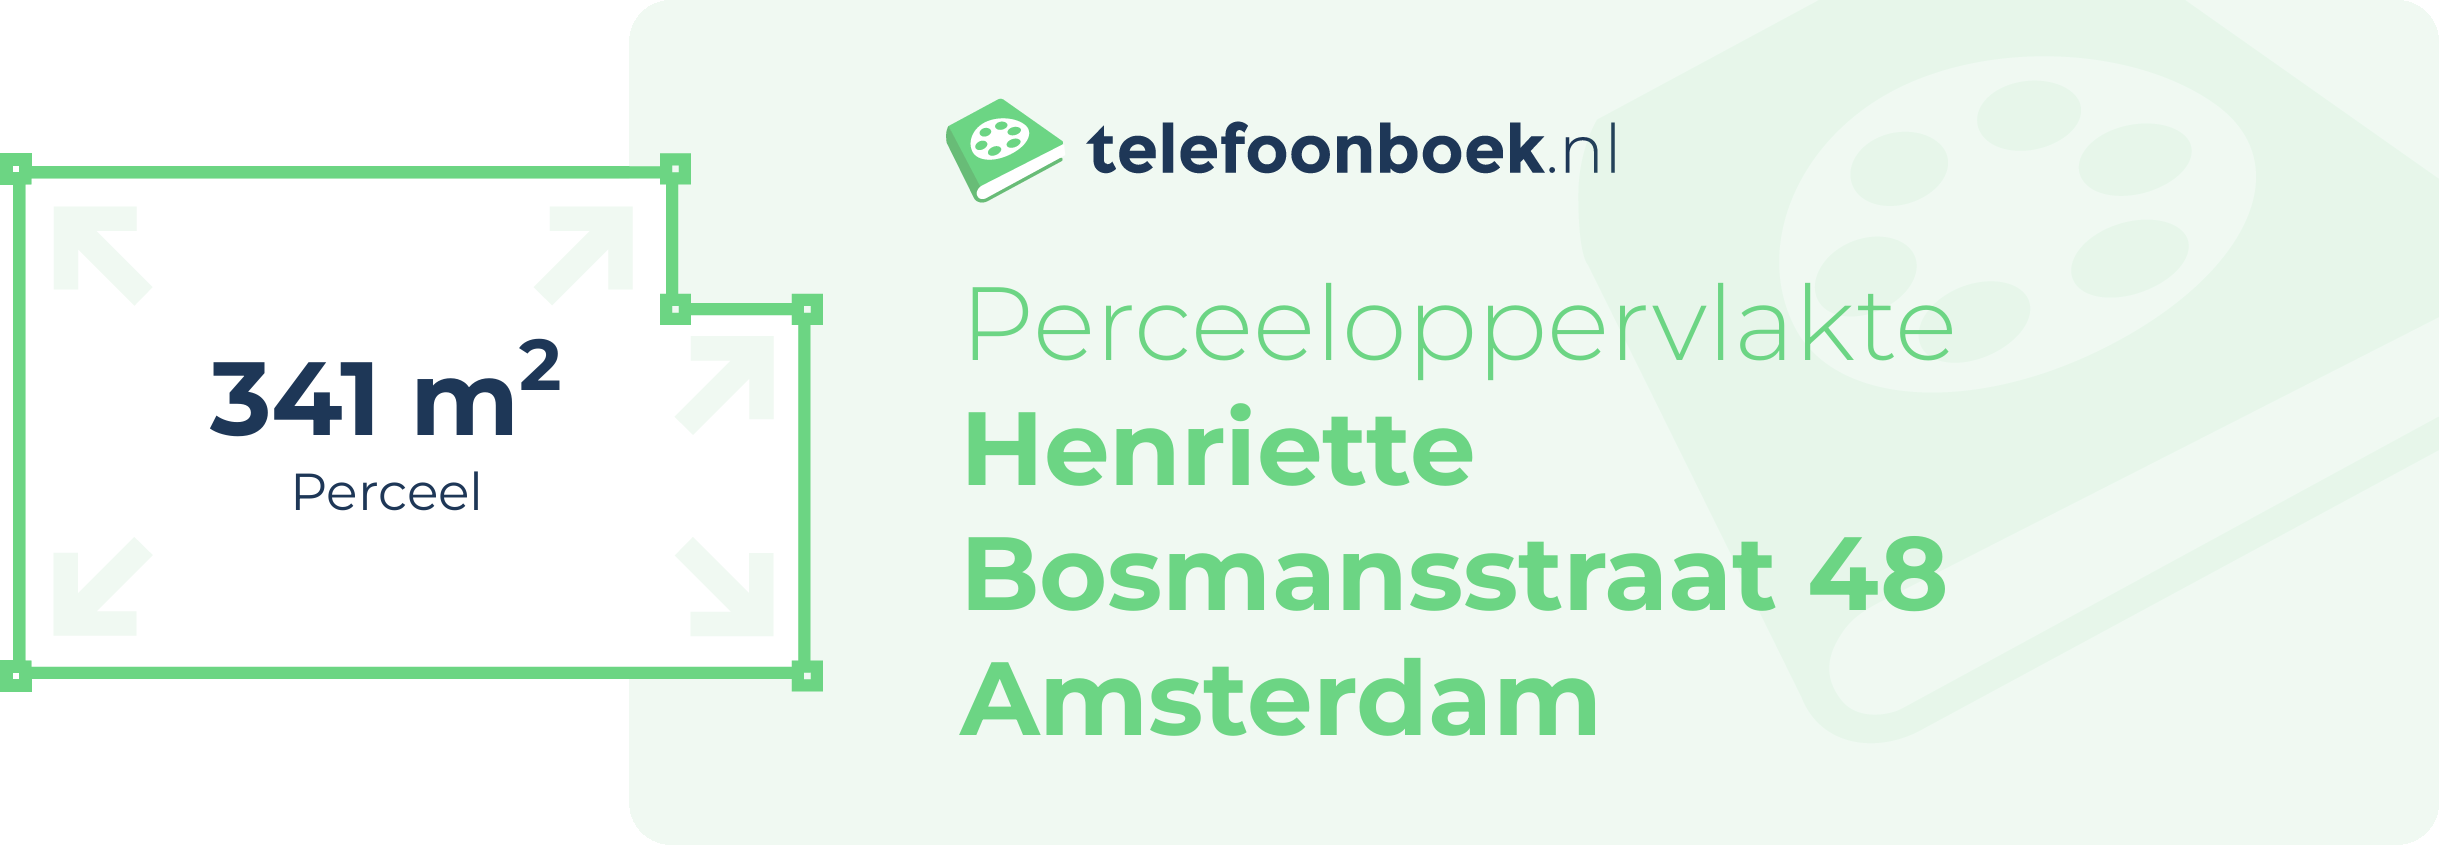 Perceeloppervlakte Henriette Bosmansstraat 48 Amsterdam